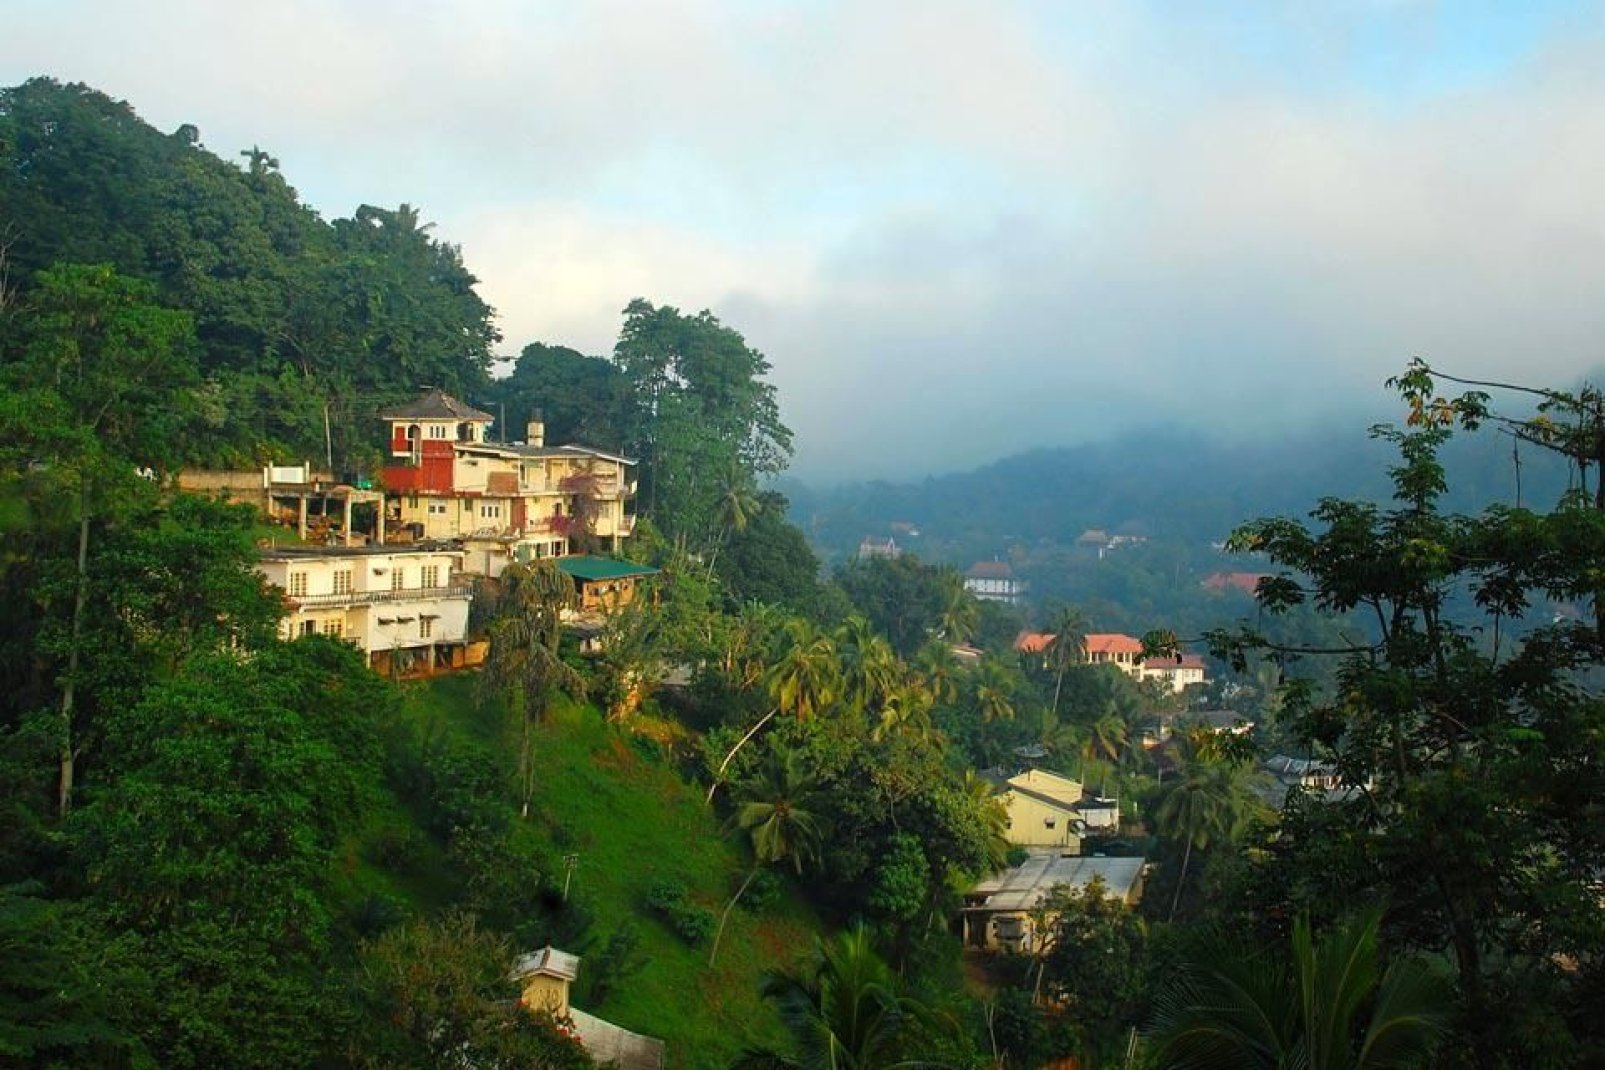 La ciudad de Kandy, conocida por su Templo del Diente, que alberga una reliquia de Buda, está situada entre las verdes colinas y la reserva natural de Udawattakelle Forest.